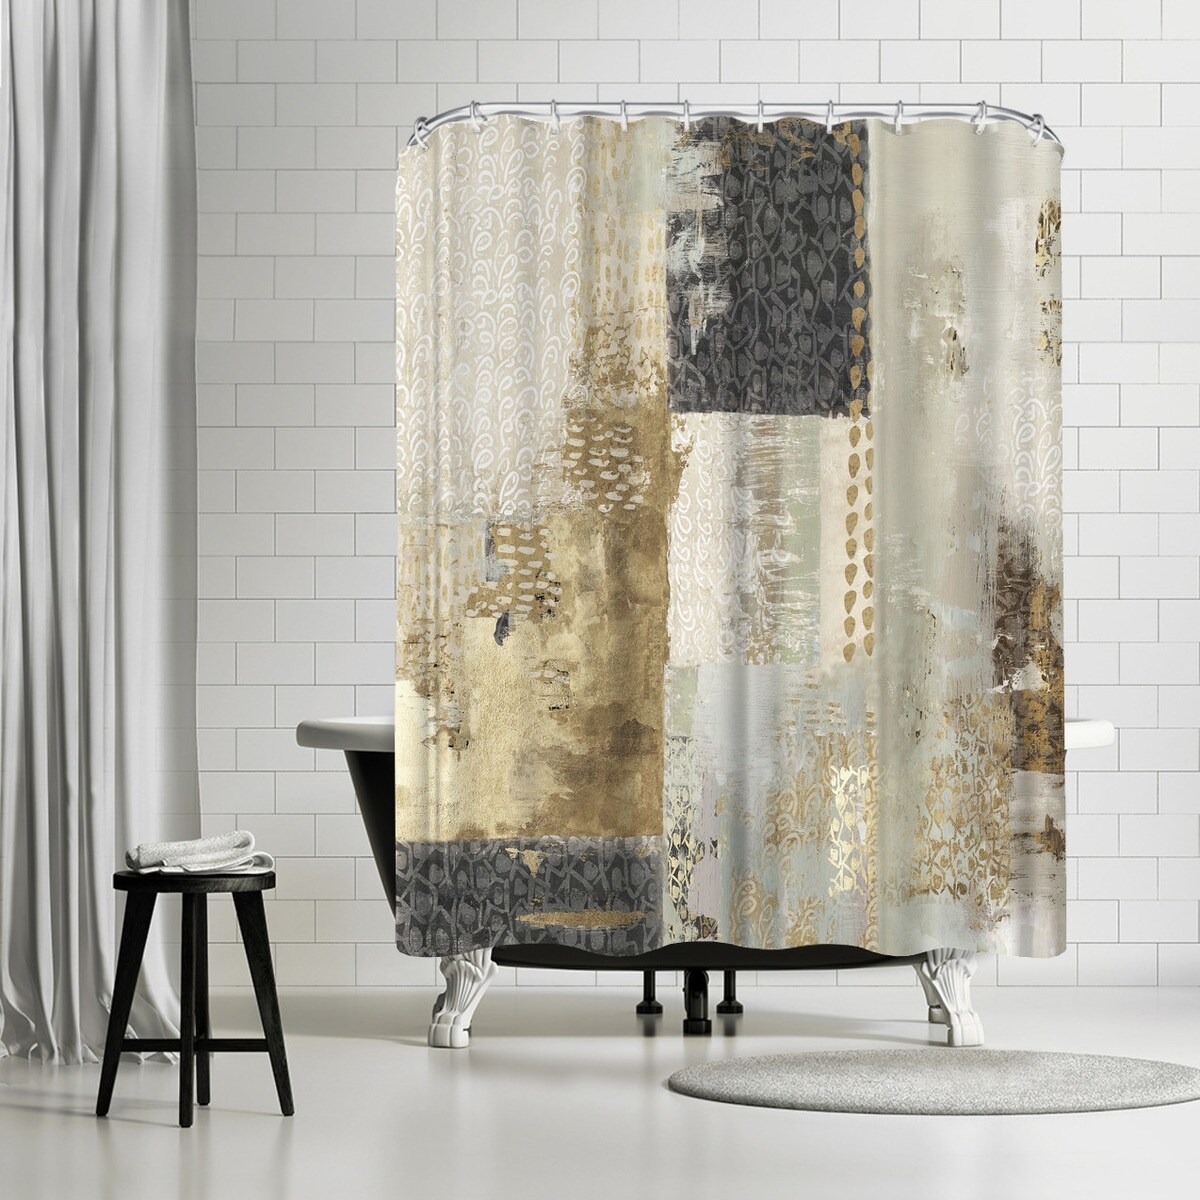 KRISIN Shower Curtain for Bathroom, Polyester Fabric Bathroom